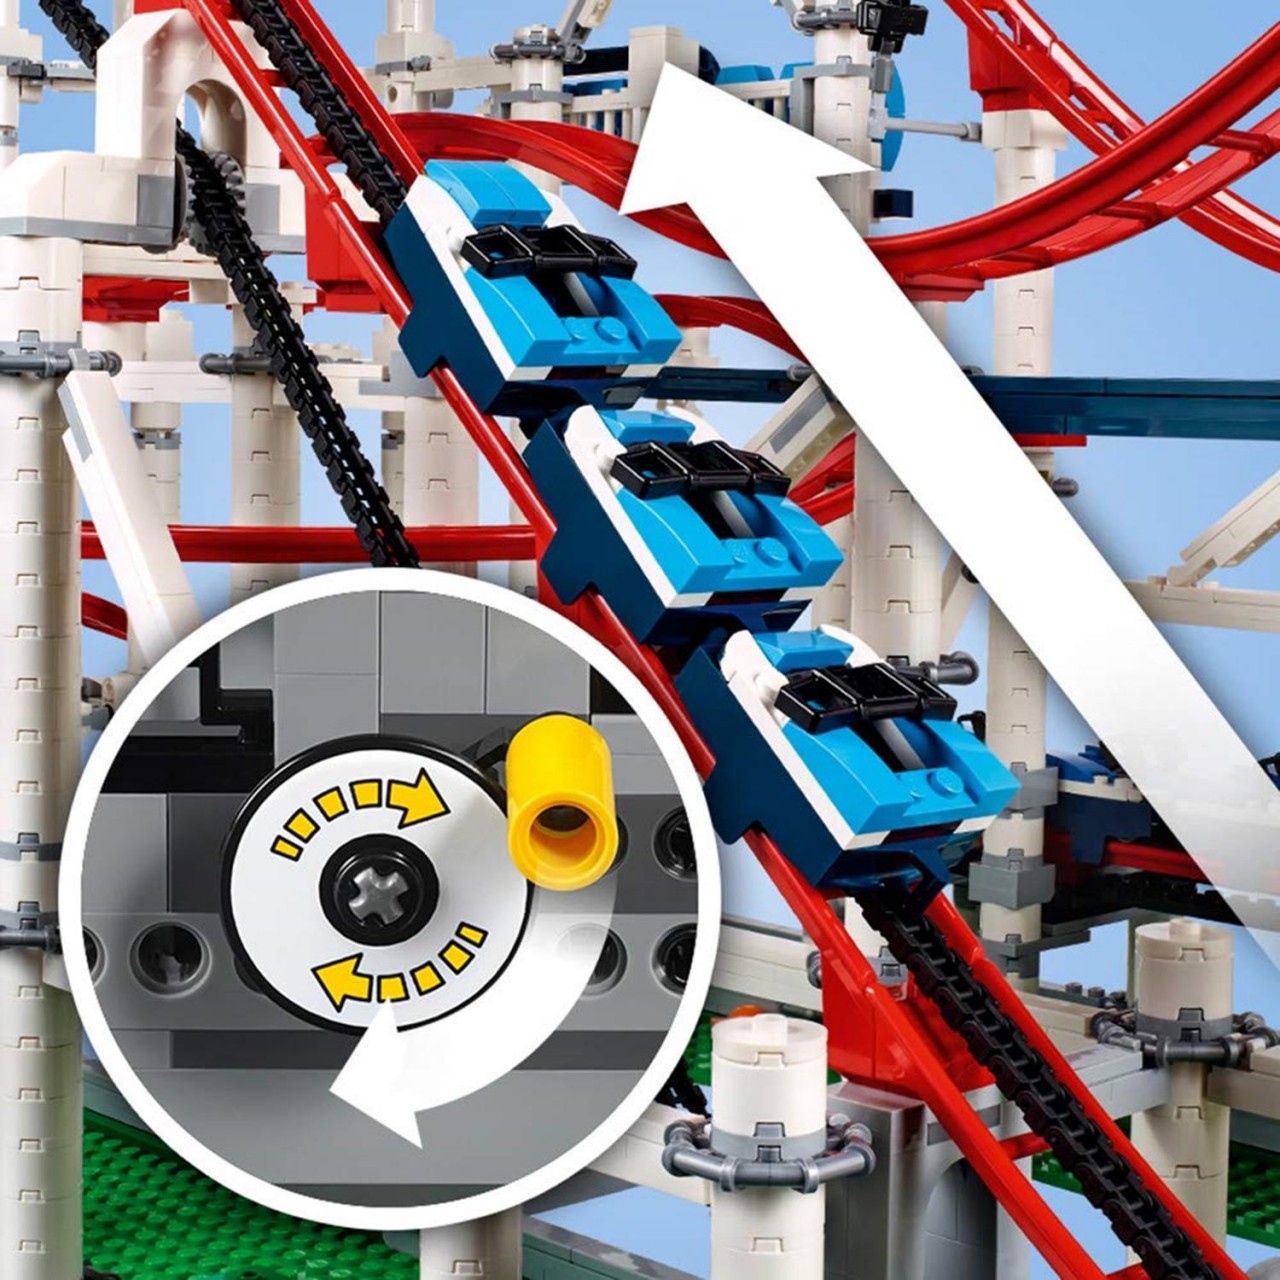 LEGO CREATOR 10261 Achterbahn